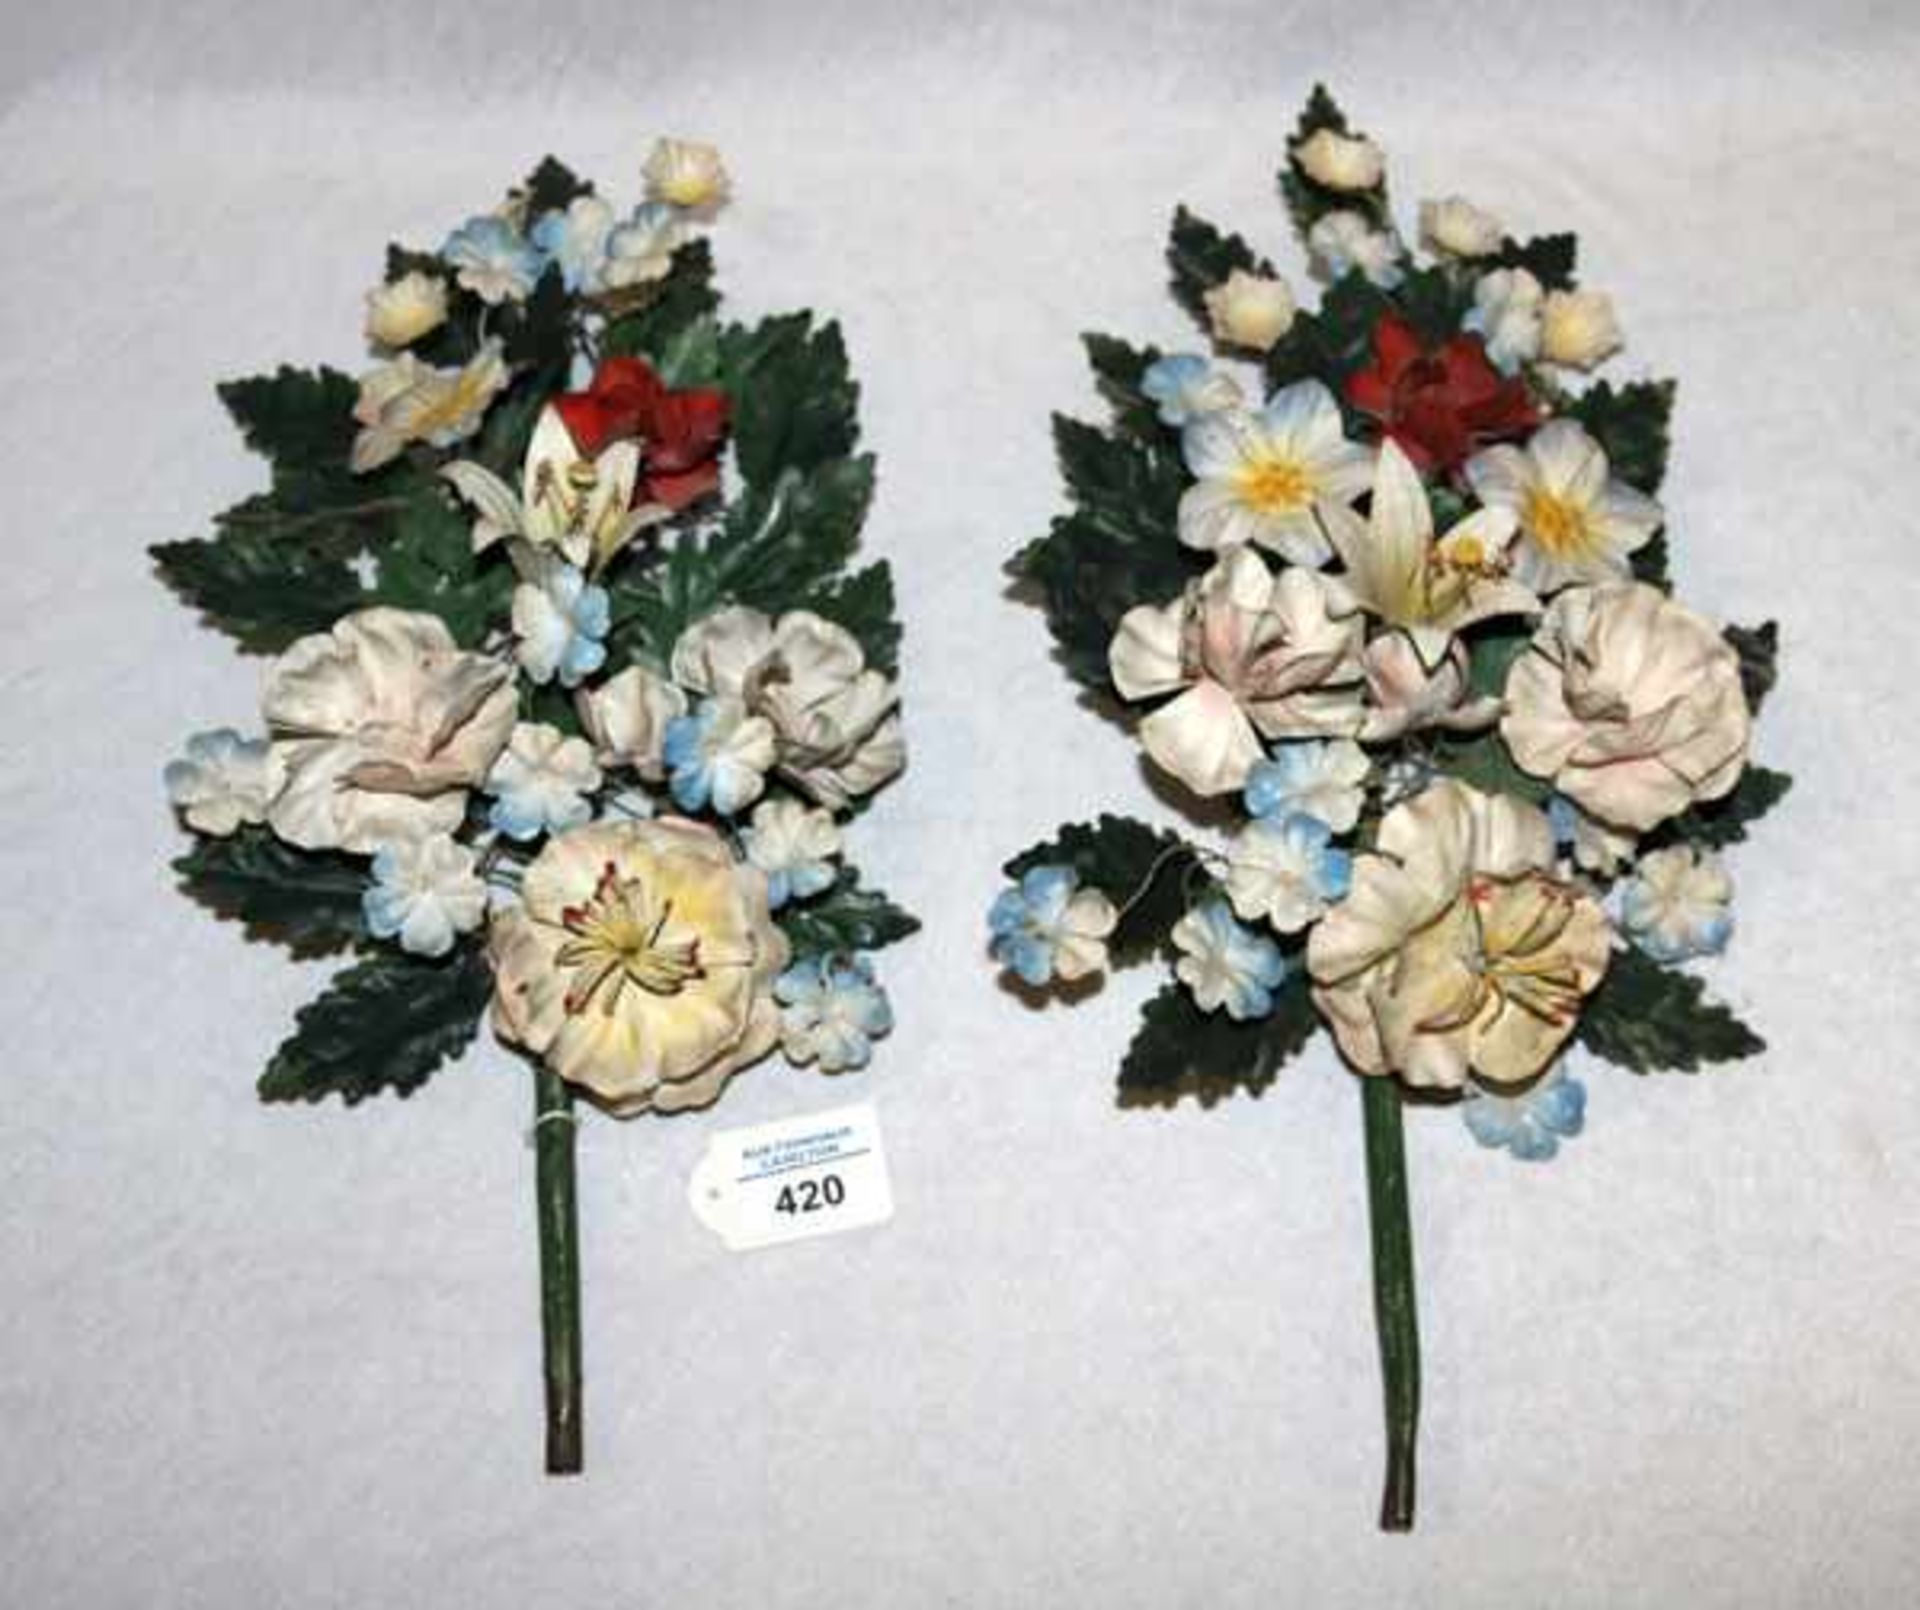 2 Metall Blumen-Wanddekorationen, farbig, H 42 cm, B 22 cm, Altersspuren